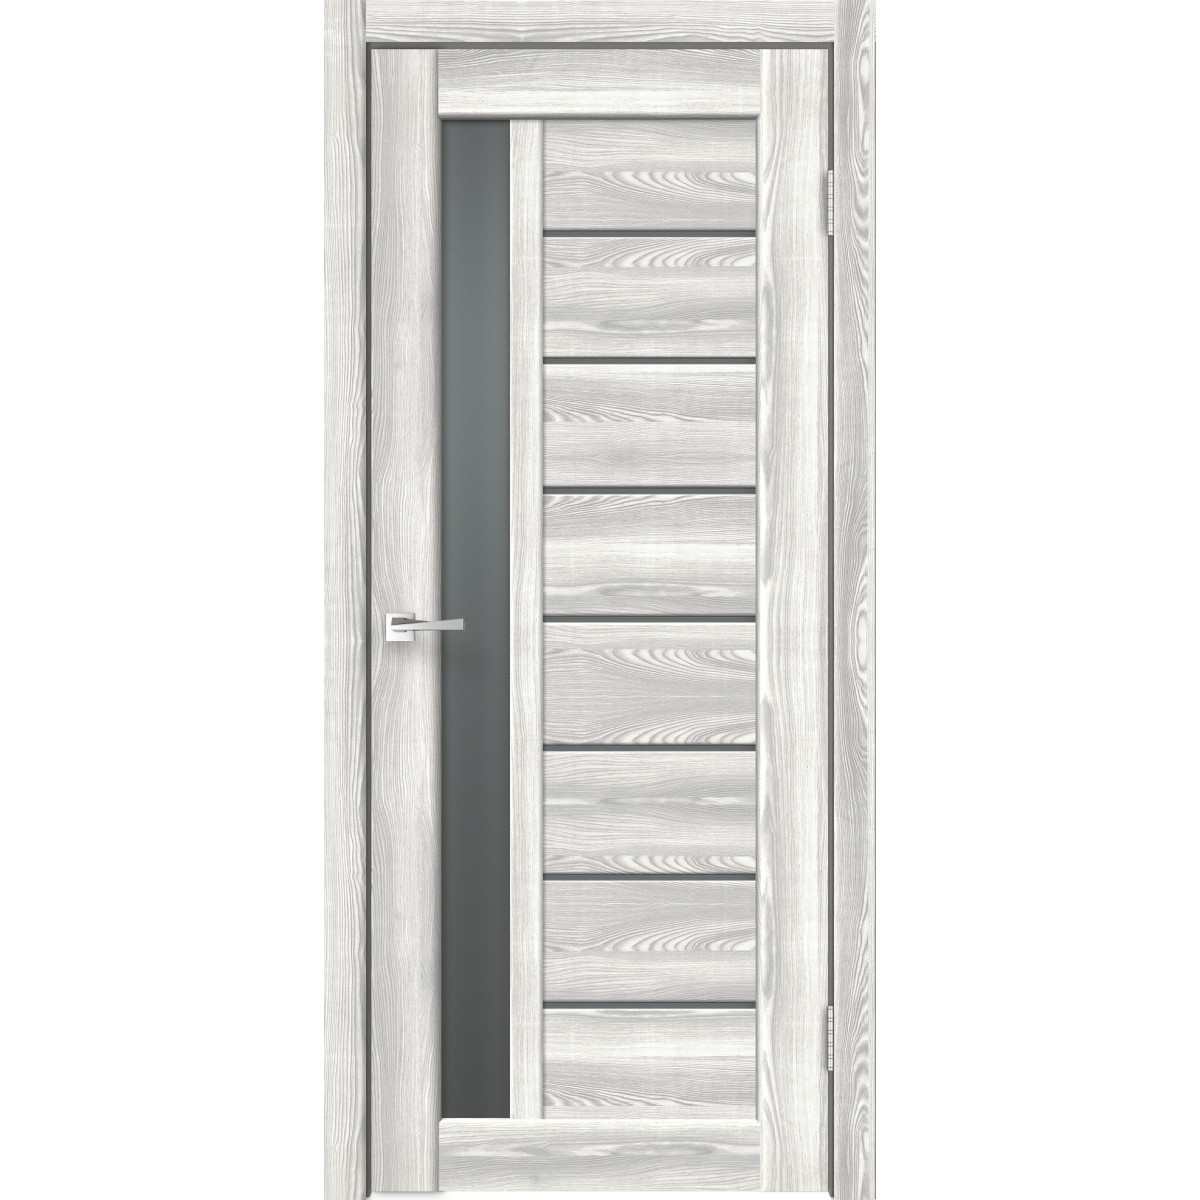 Дверь межкомнатная остеклённая Сиэтл 8 70х200 см с фурнитурой, ПВХ, цвет светлый клён